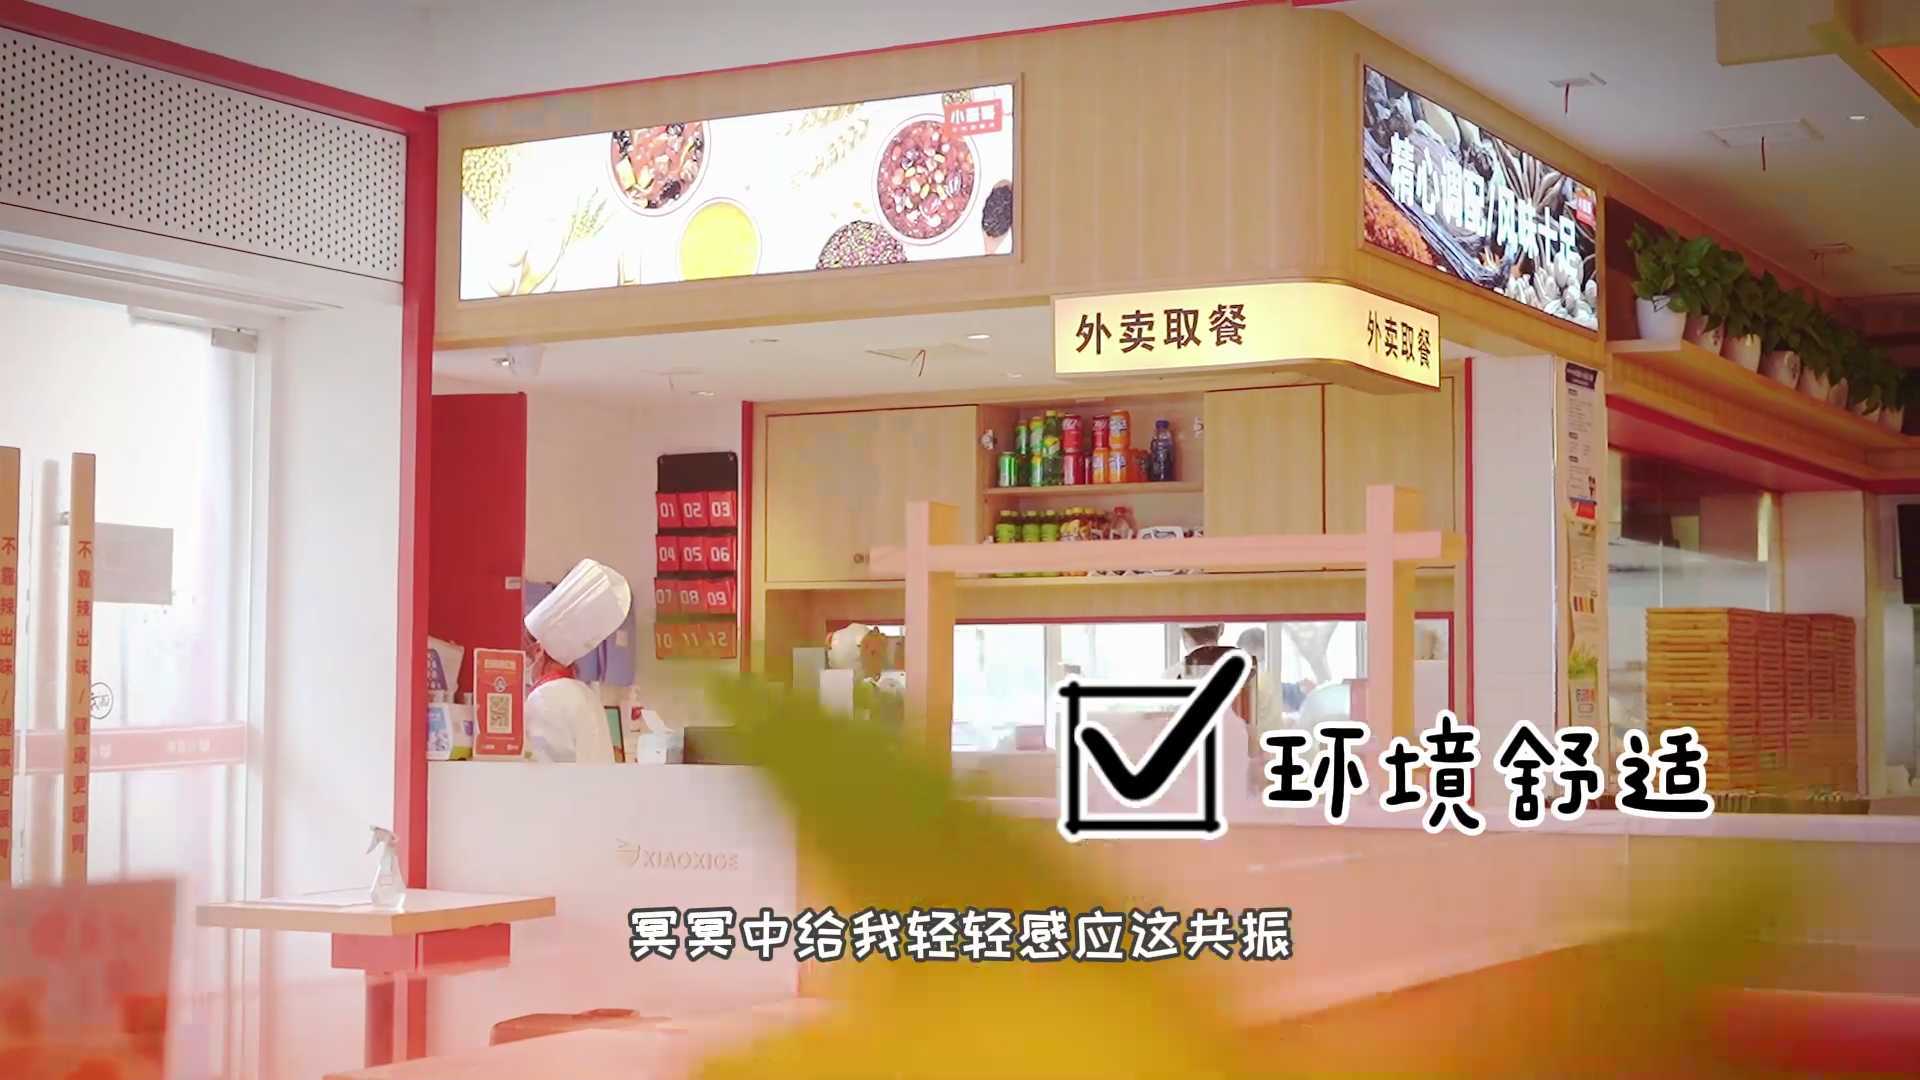 胡辣汤早餐店-“小喜哥”环境篇